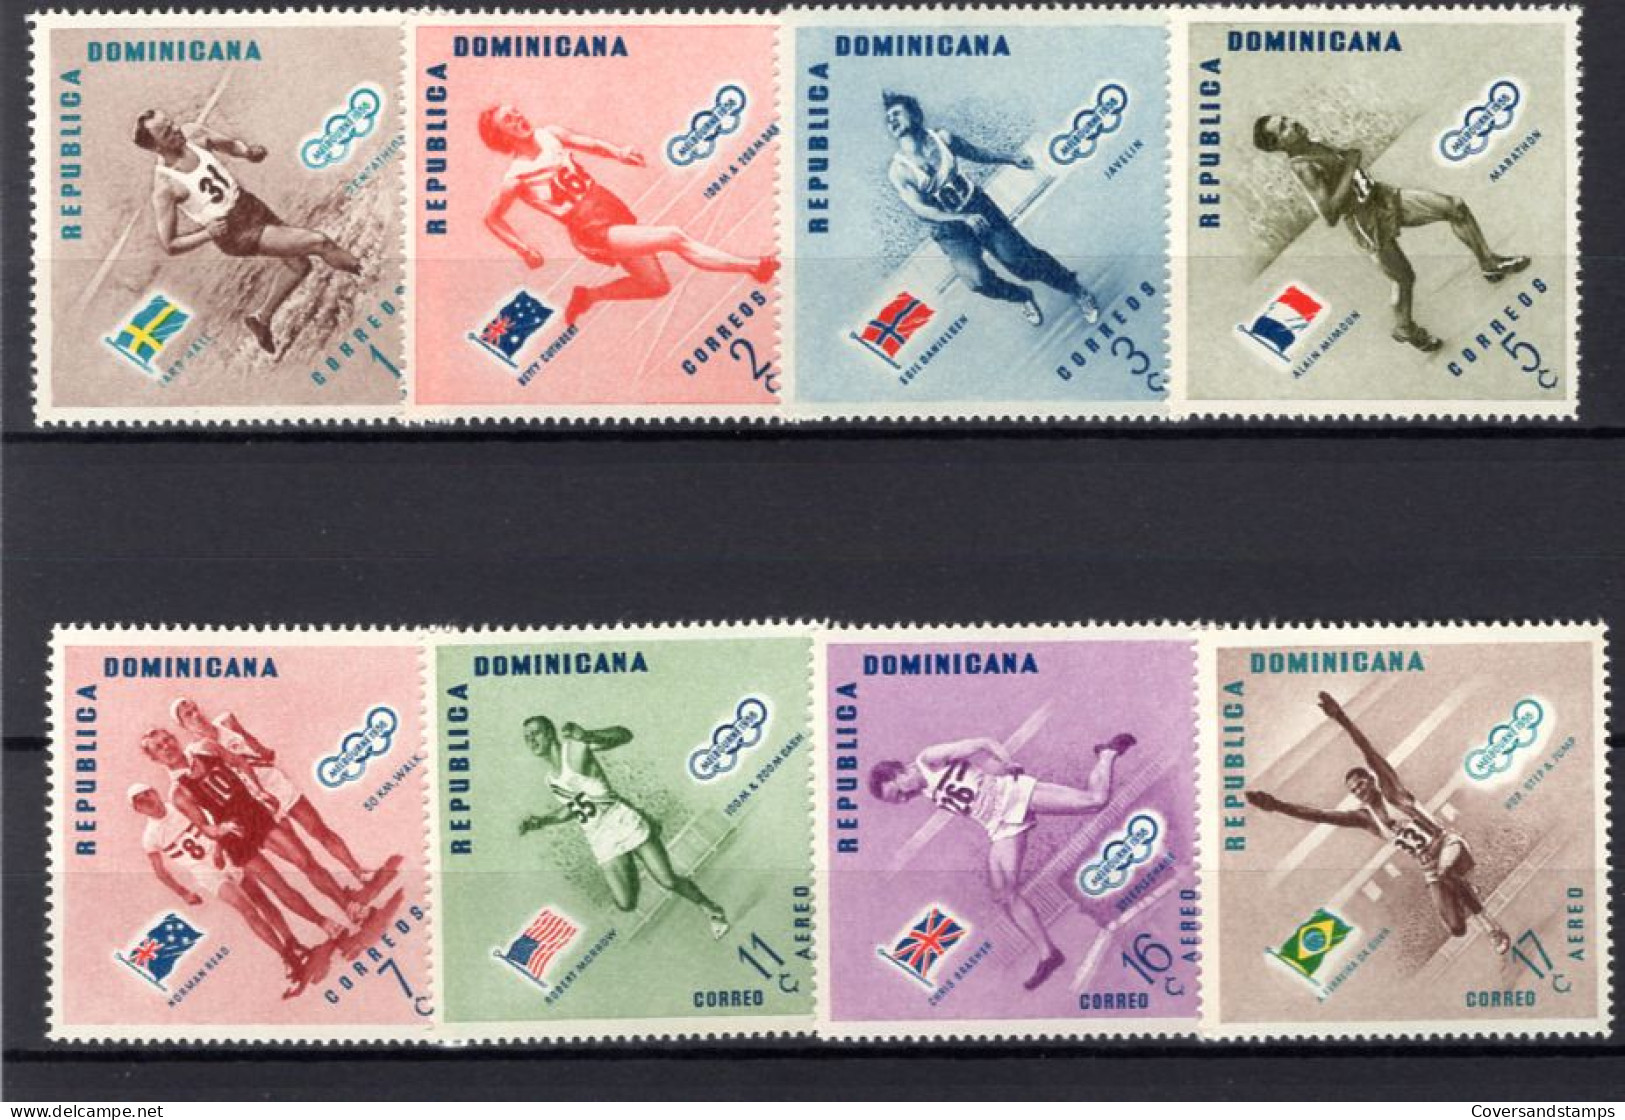  Republica Dominicana - Melbourne 1956 - Estate 1956: Melbourne